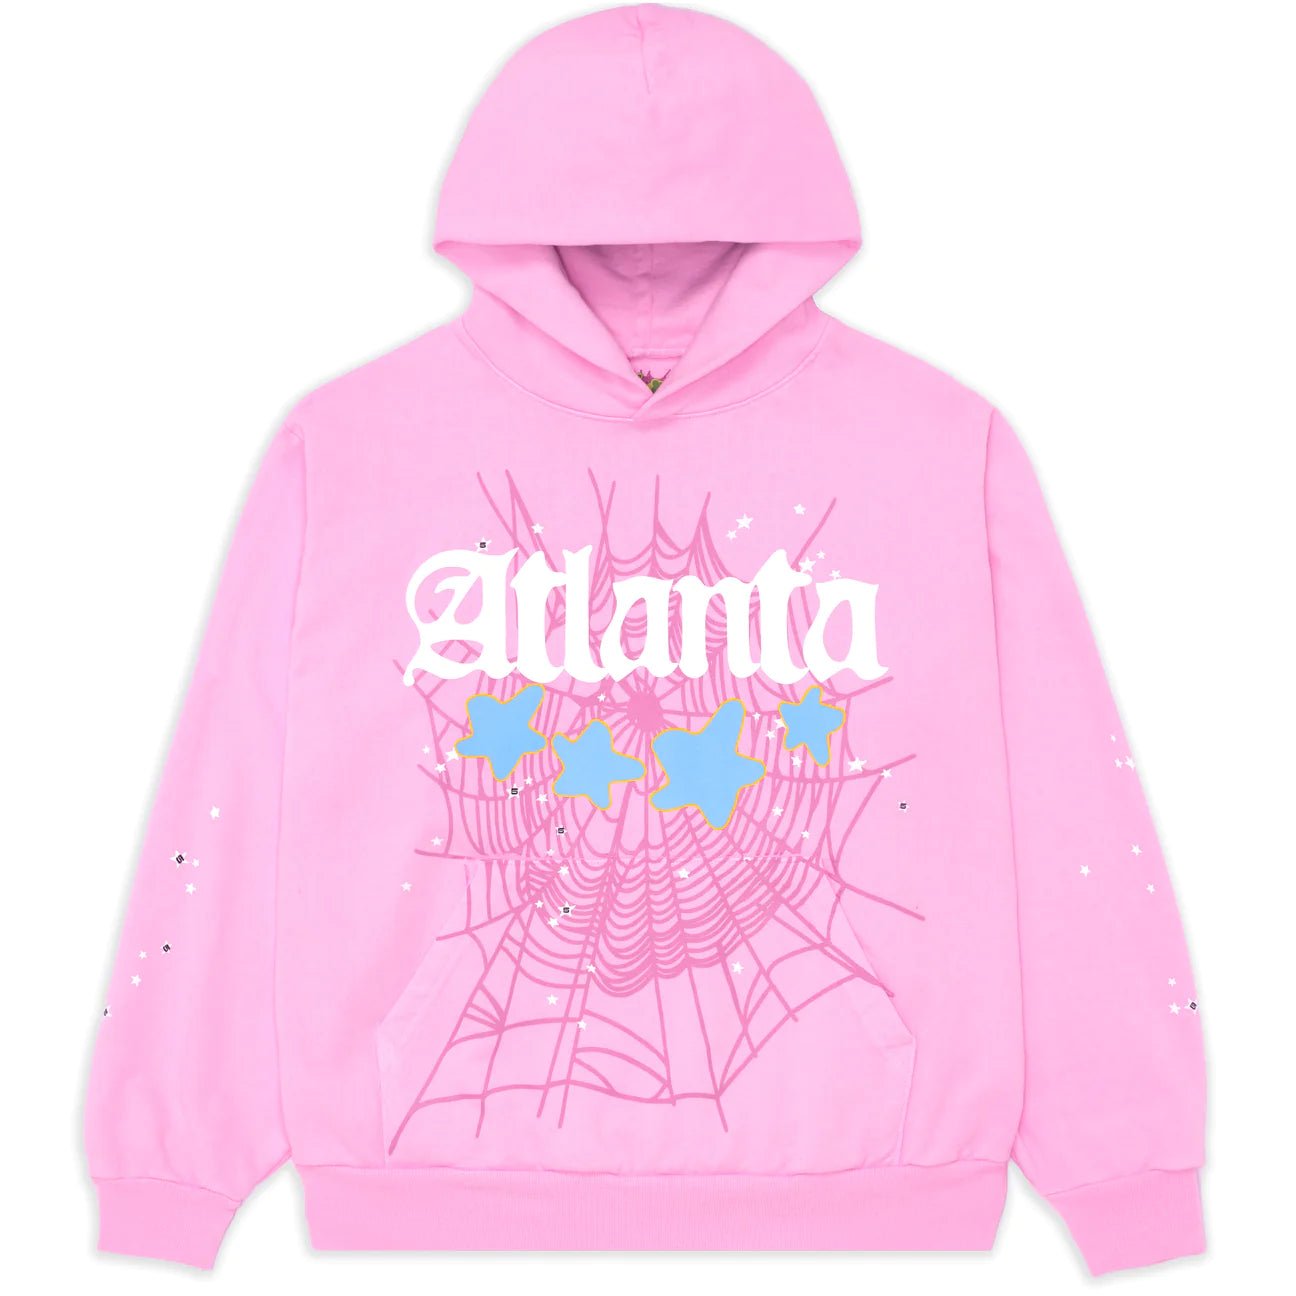 Sp5der Atlanta Hoodie Pink-Supra Sneakers-$350.00